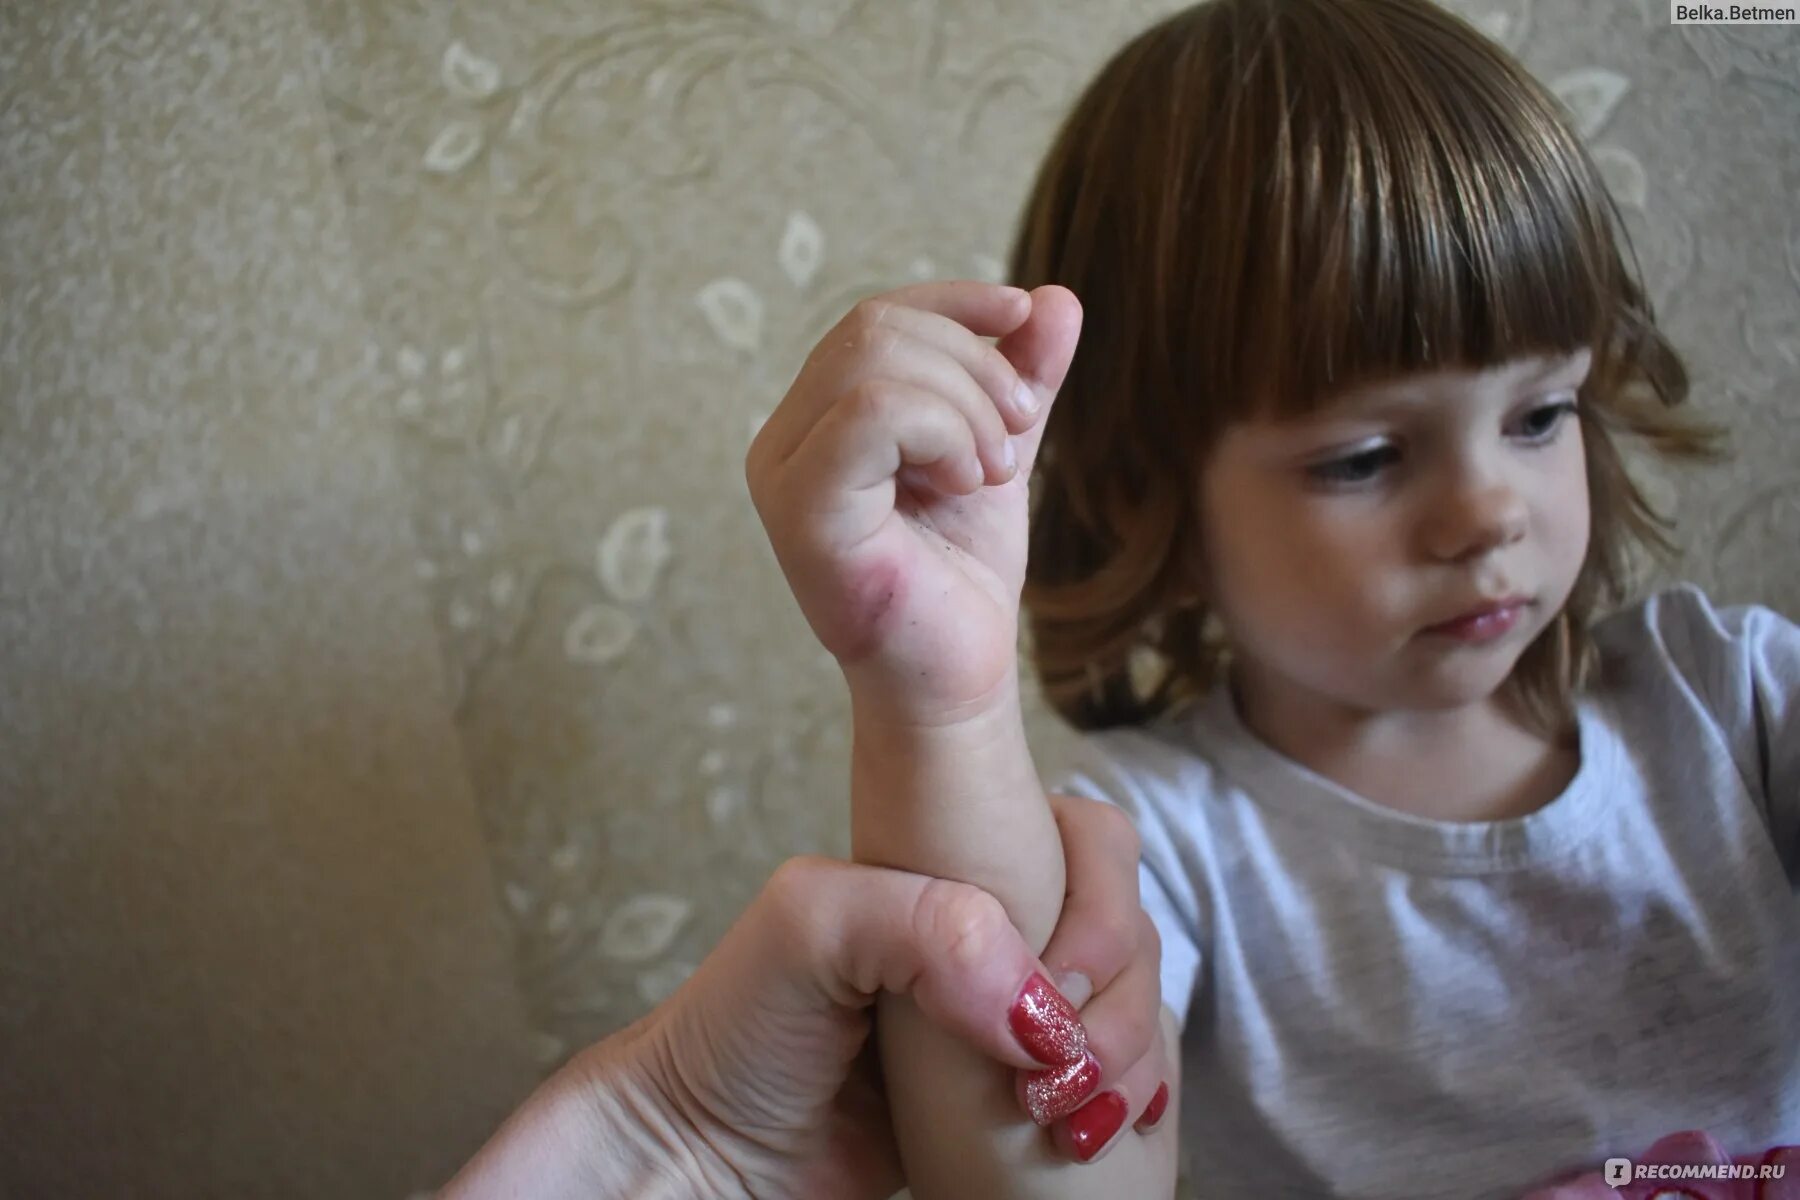 Пальчиком девочки маленькой. Обсосанный палец ребенка. Вредная привычка сосание пальца у детей. Отсасывать палец